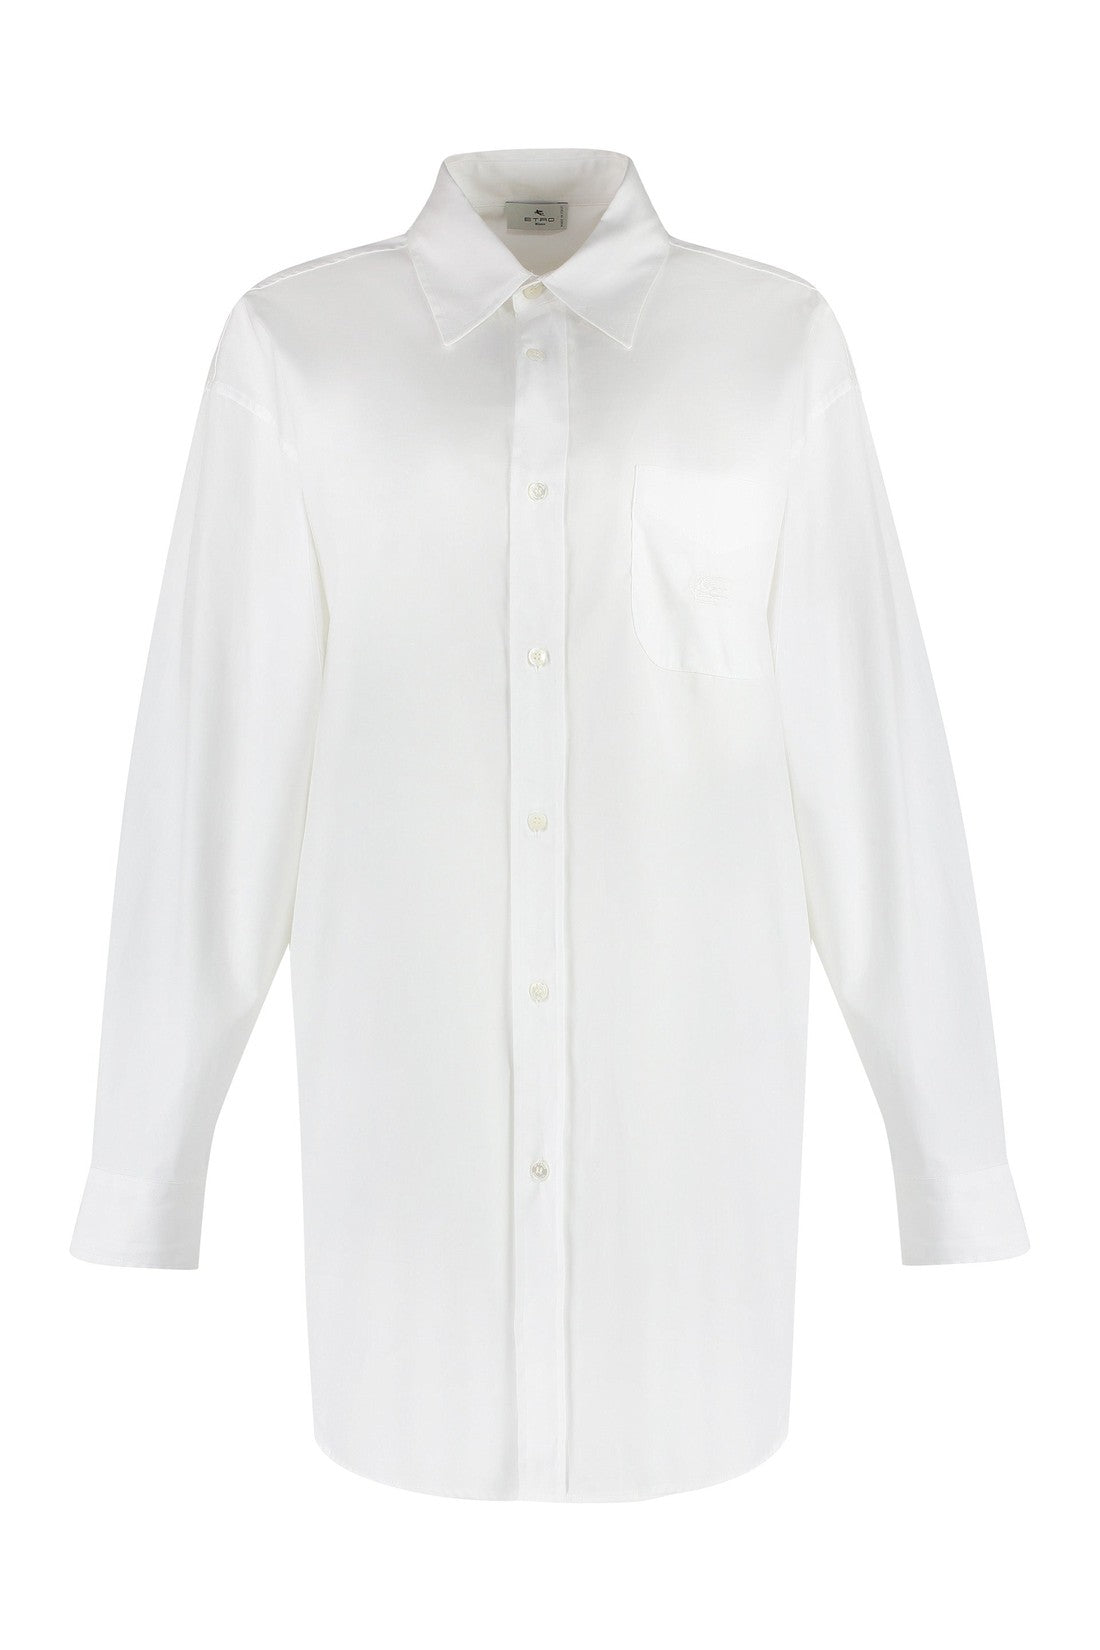 Etro-OUTLET-SALE-Cotton shirt-ARCHIVIST